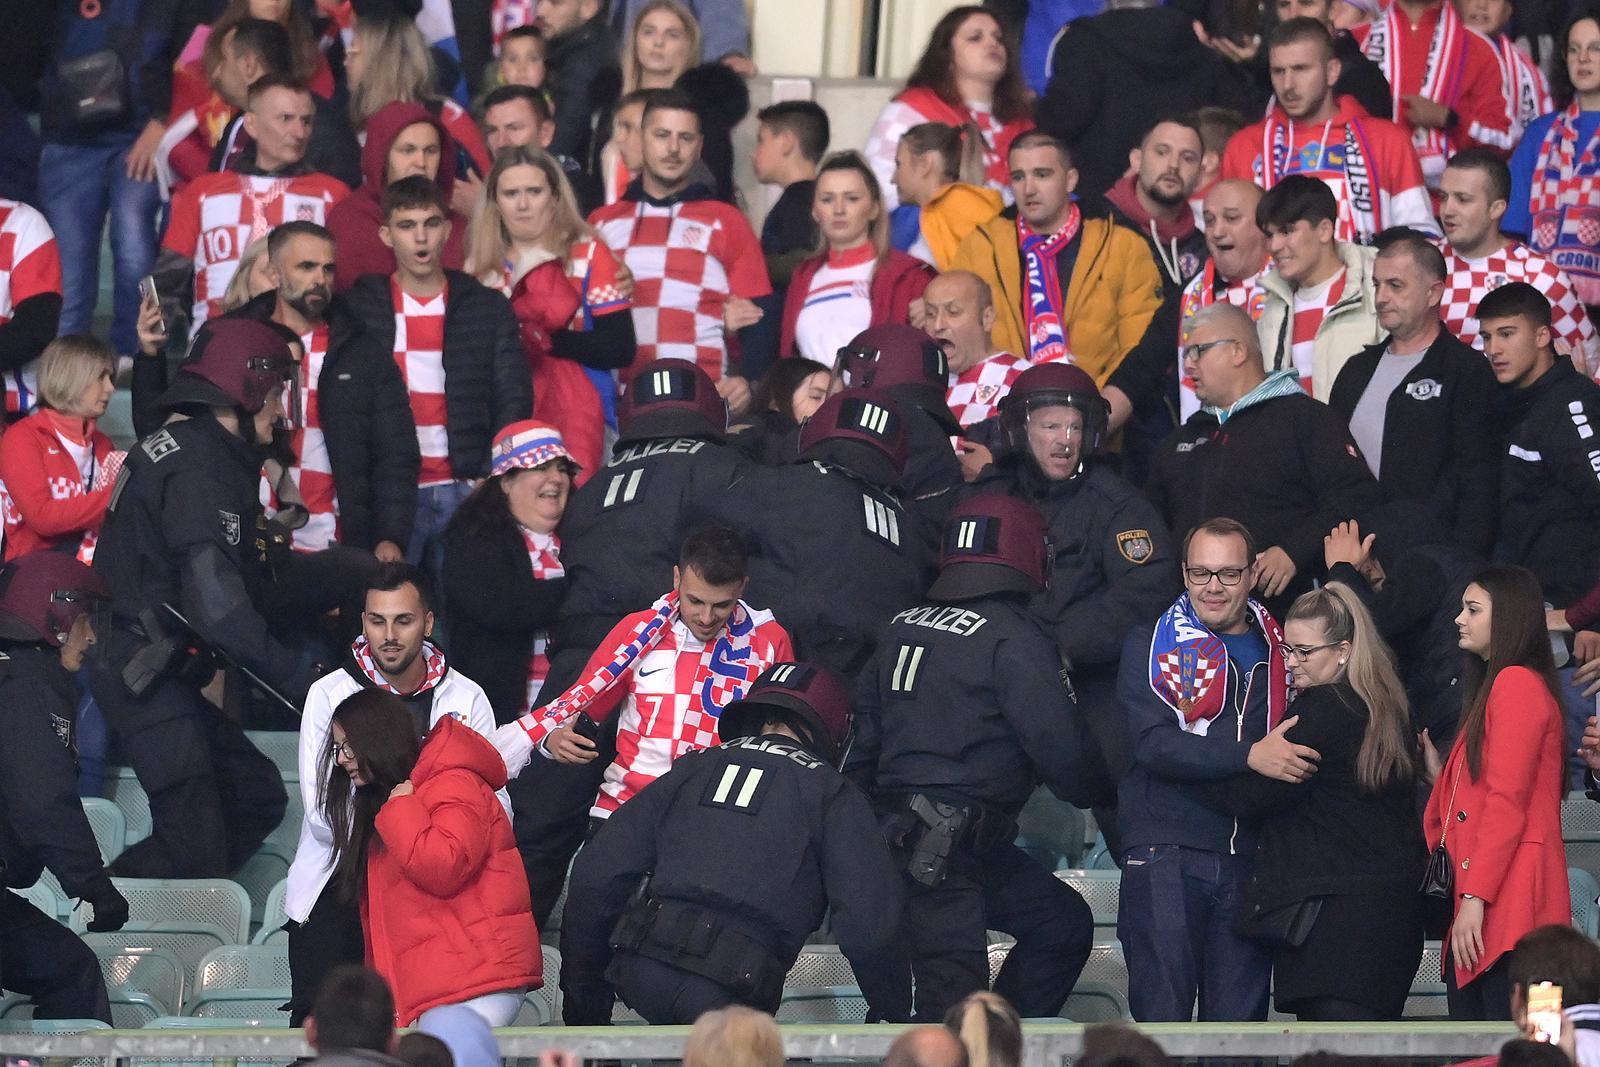 Hrvatski navijači se potukli međusobno pa onda s policijom